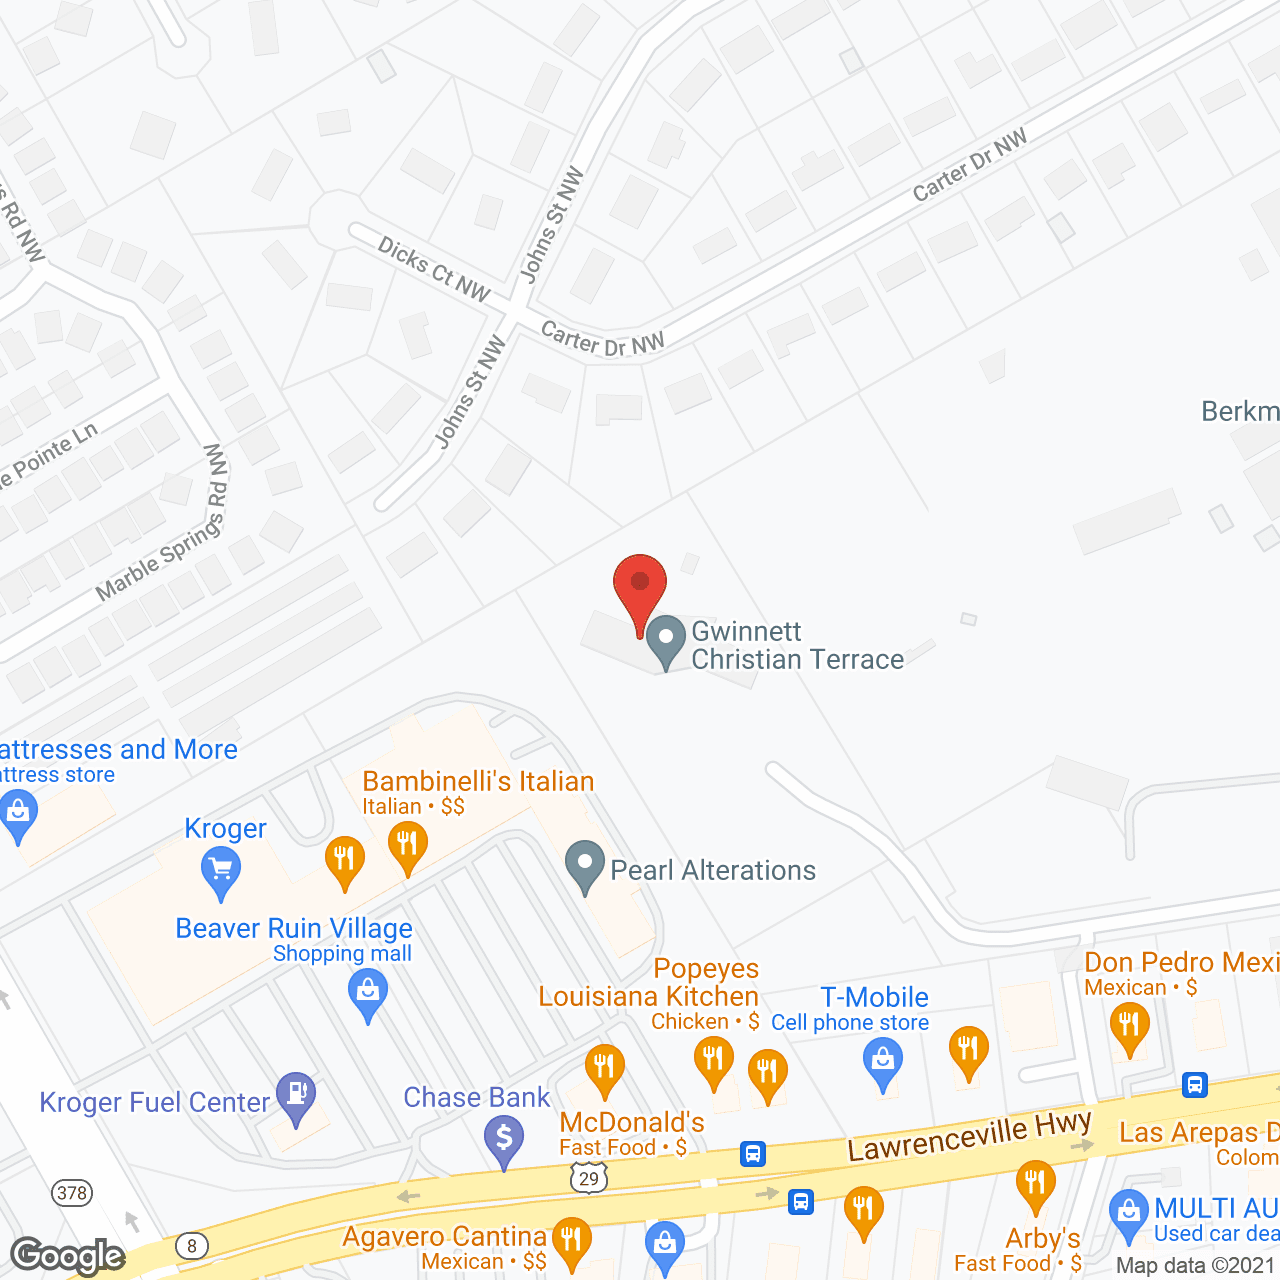 Gwinnett Christian Terrace in google map